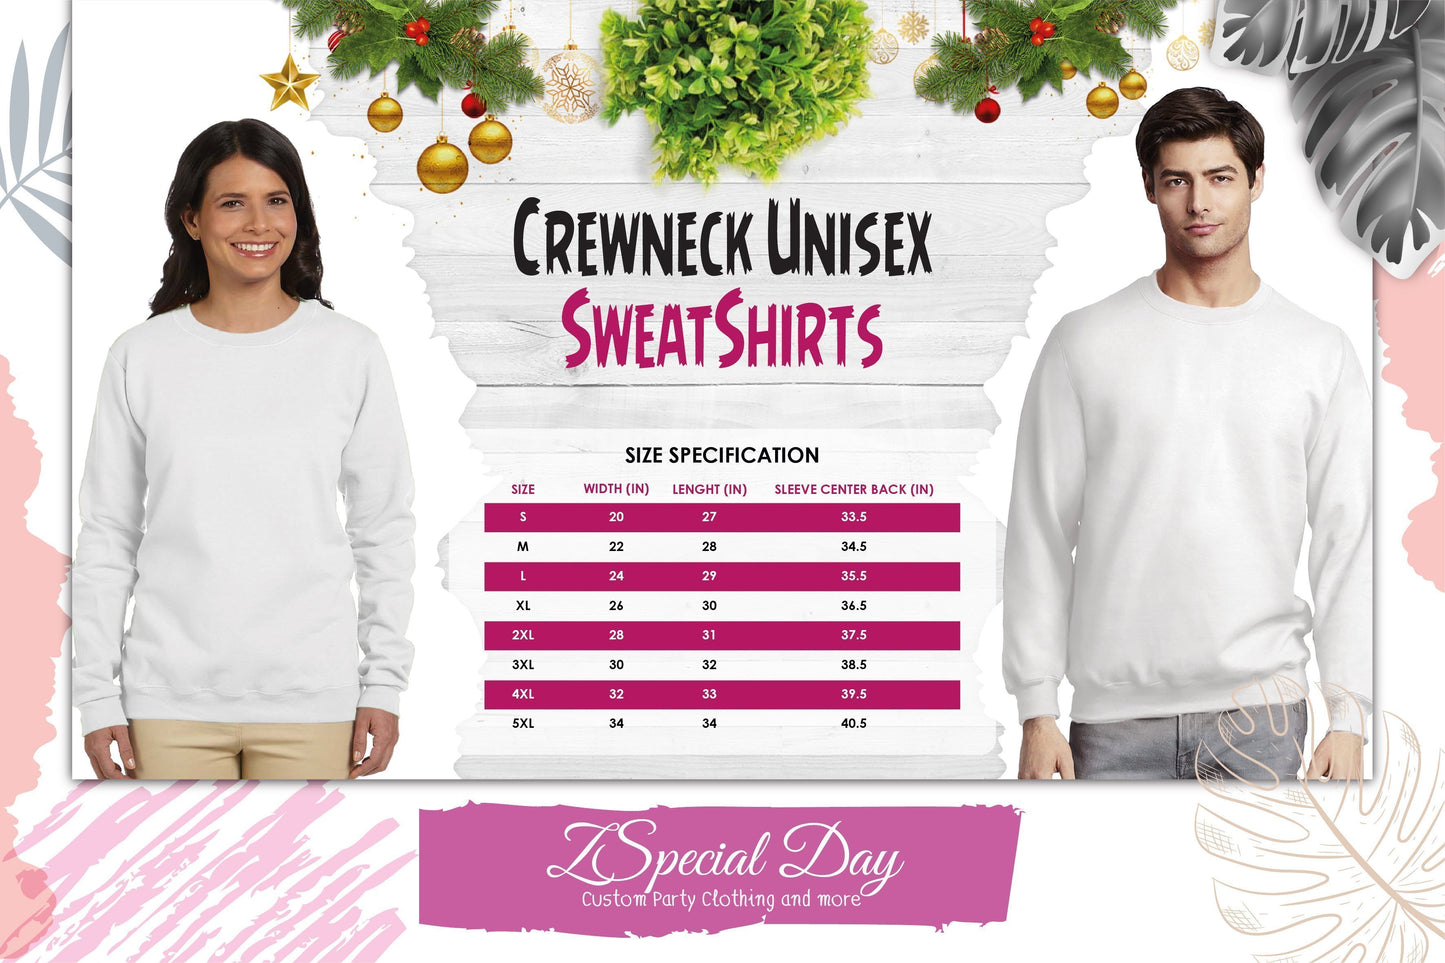 Family Christmas shirts 2021, Christmas sweater